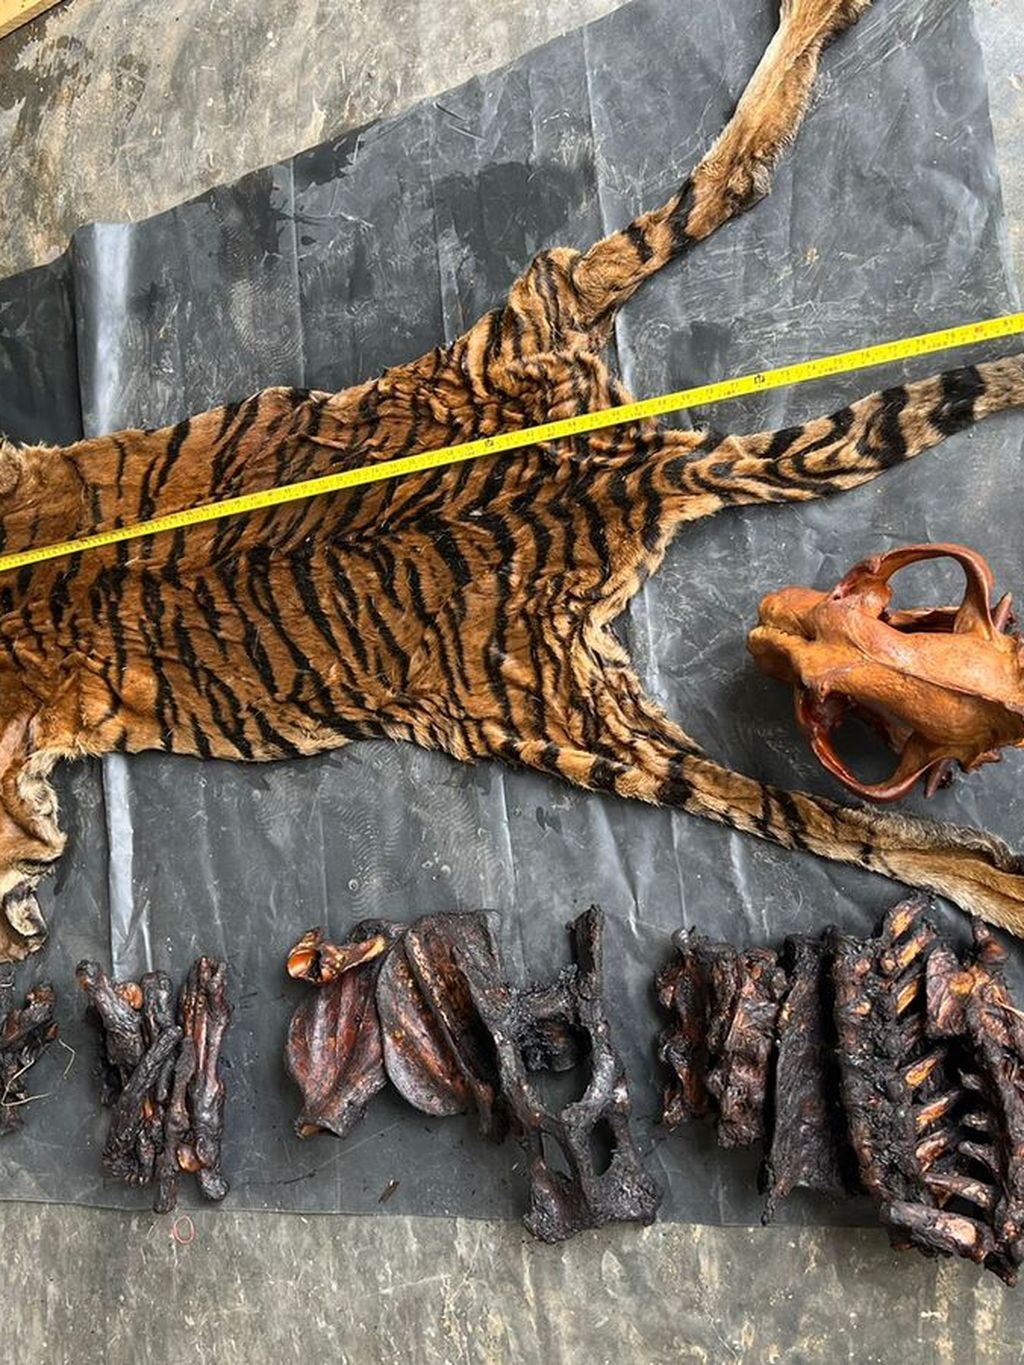 Barang bukti kulit harimau yang disita dari Ahmadi dan Supriadi, terduga pelaku perdagangan satwa lindung. Keduanya ditangkap dalam operasi perdagangan satwa lindung oleh petugas Balak Gakkum LHK Wilayah Sumatera.